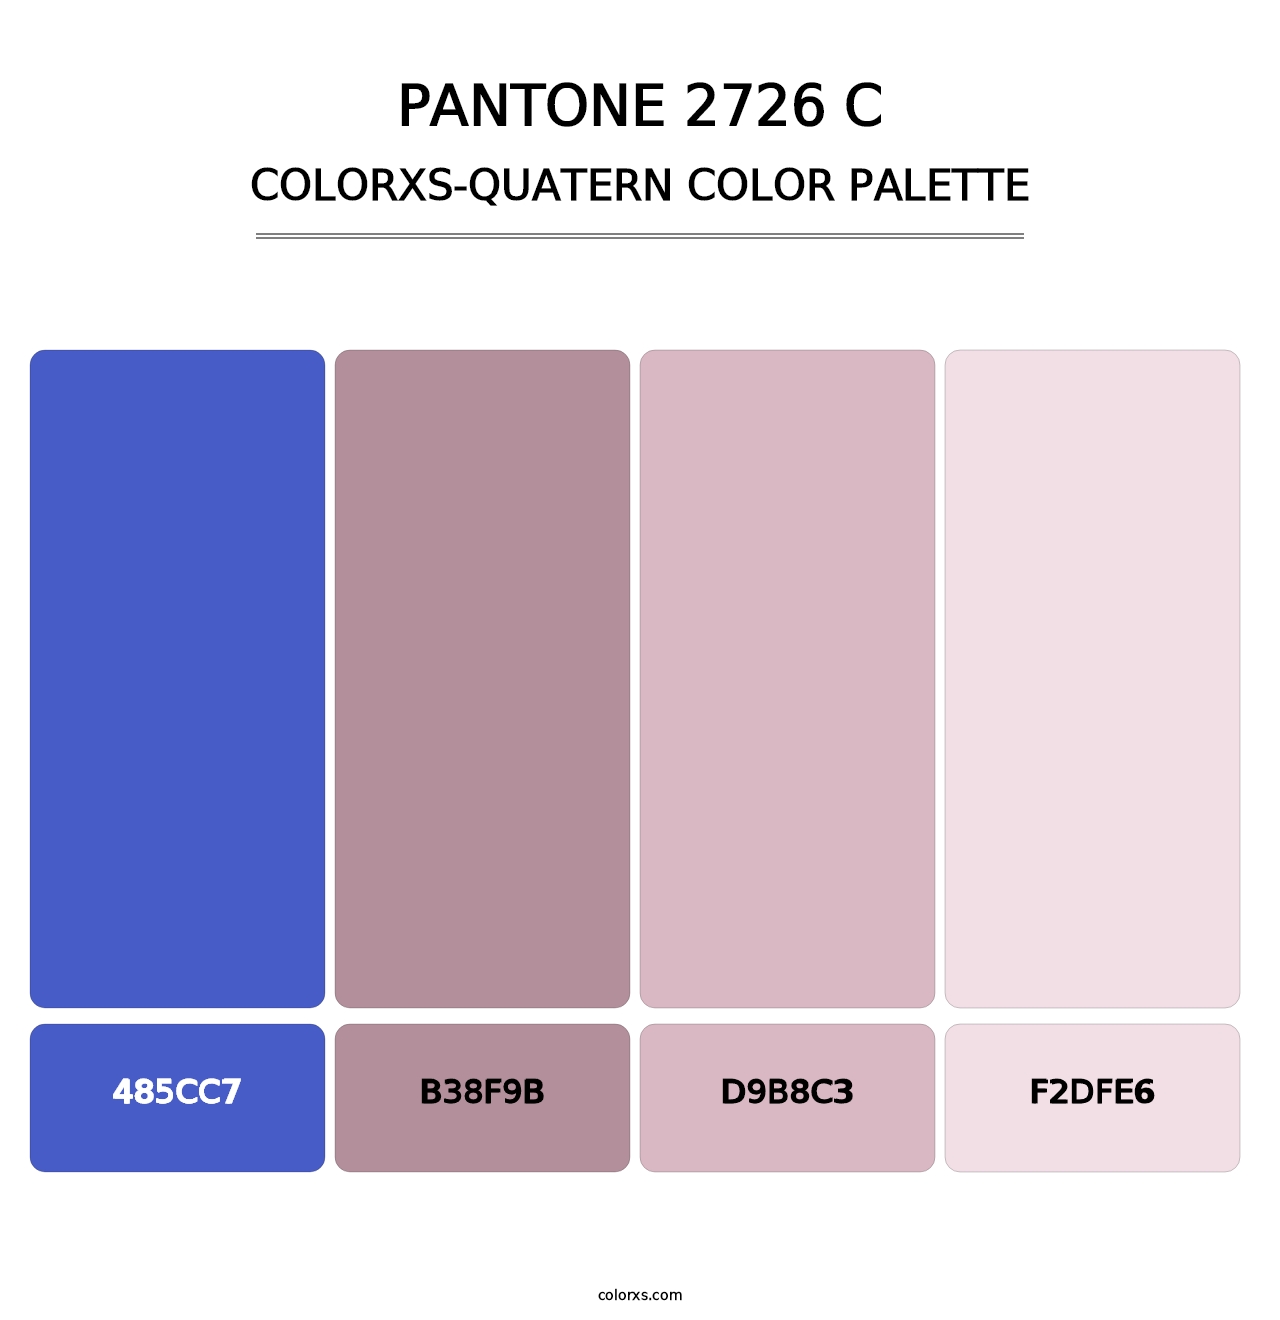 PANTONE 2726 C - Colorxs Quatern Palette